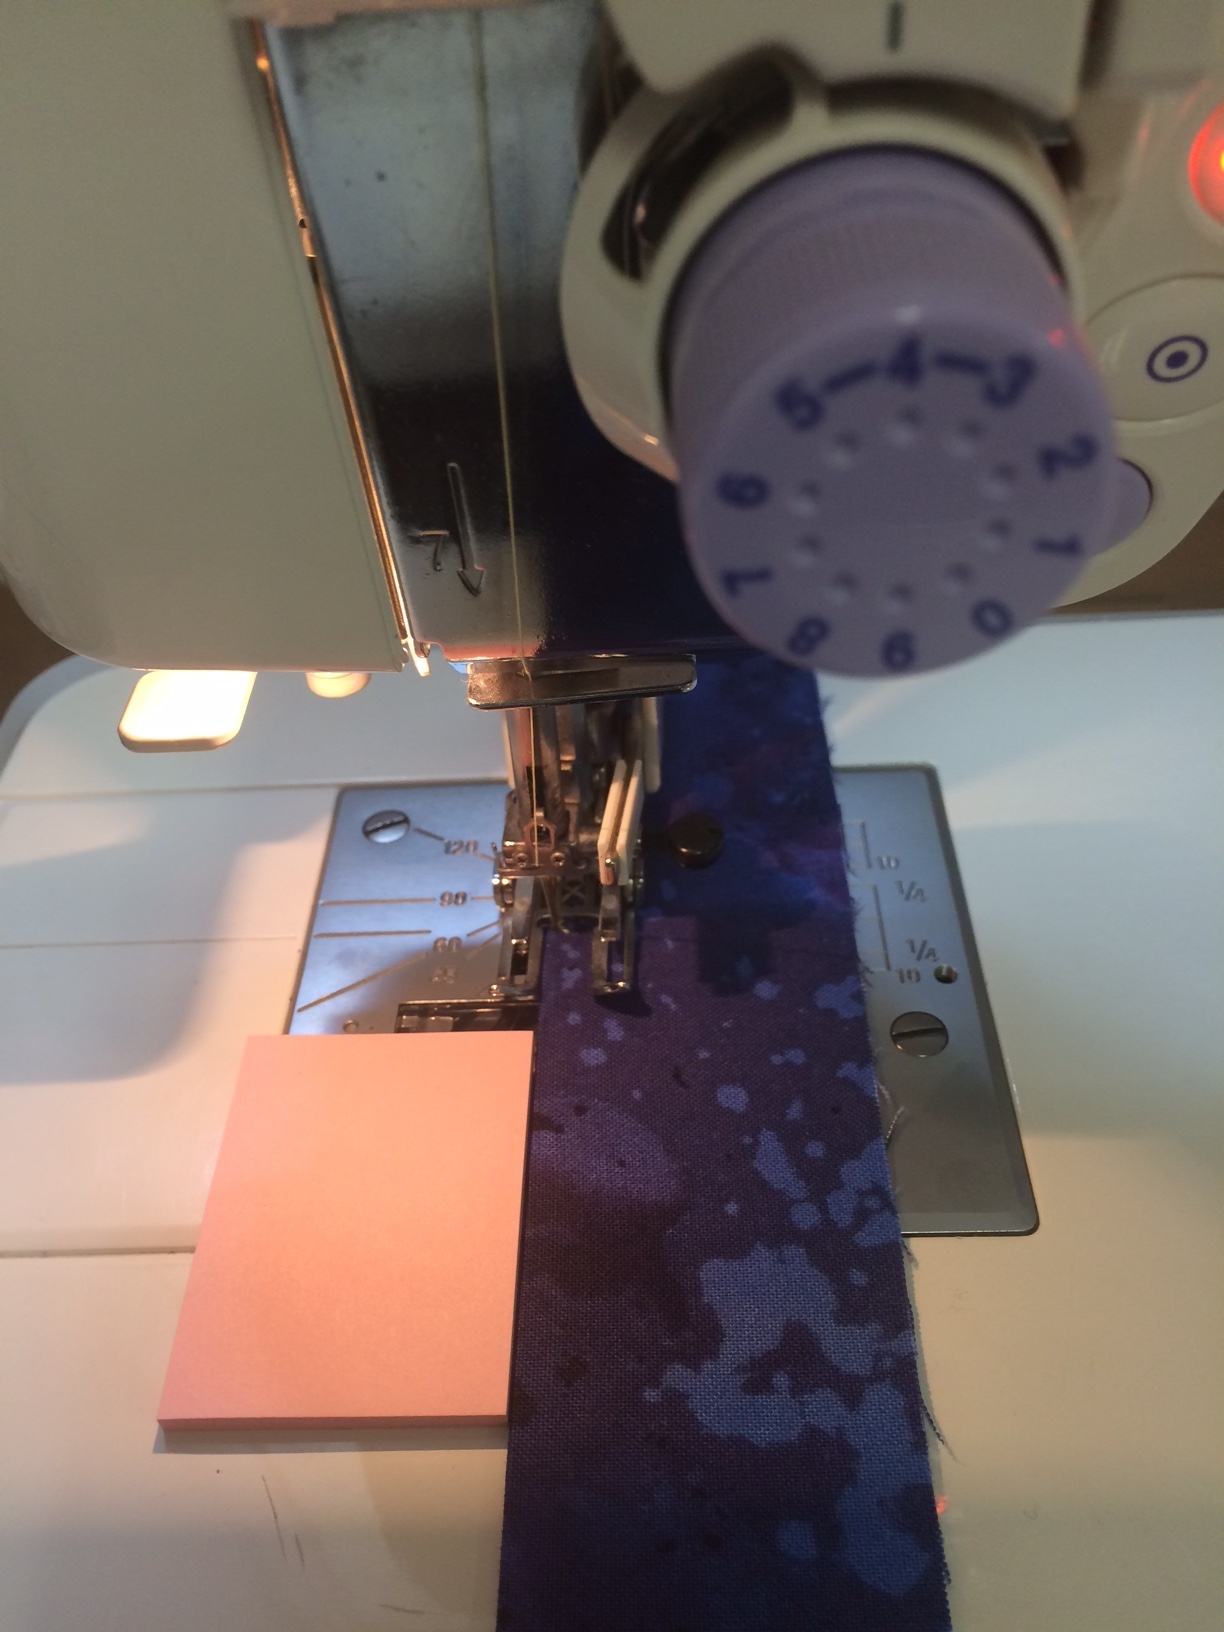 Fabric in a sewing machine